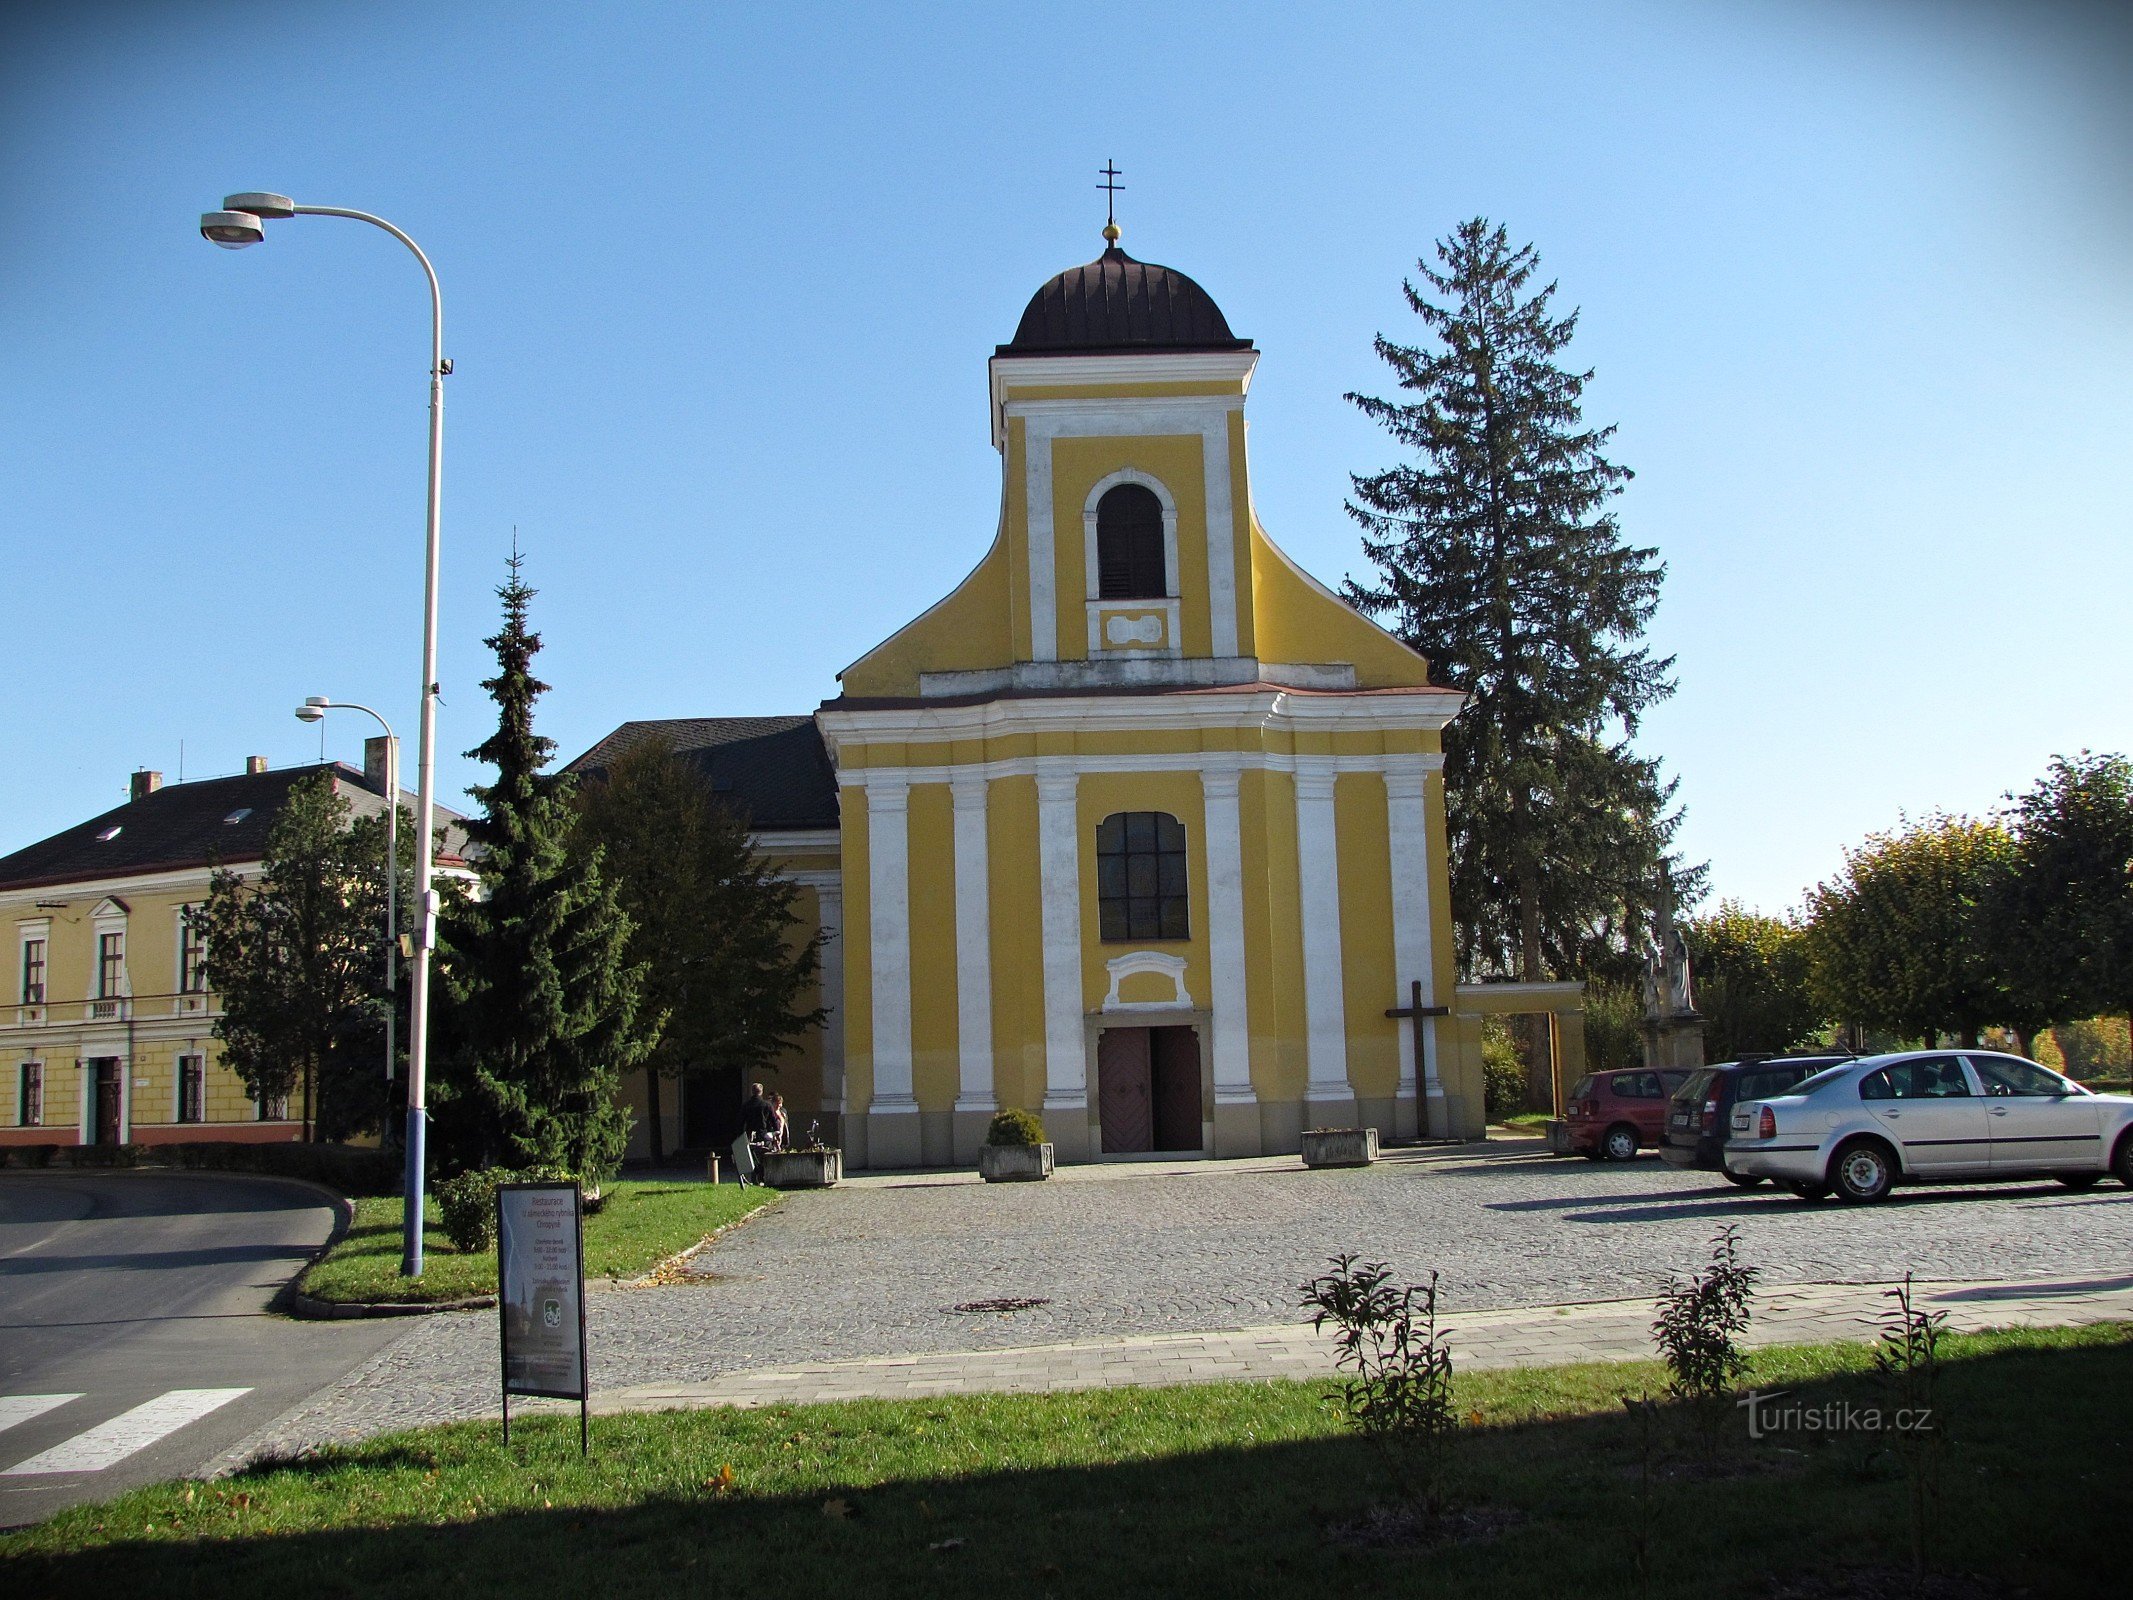 Chropyně - church of St. Giljí